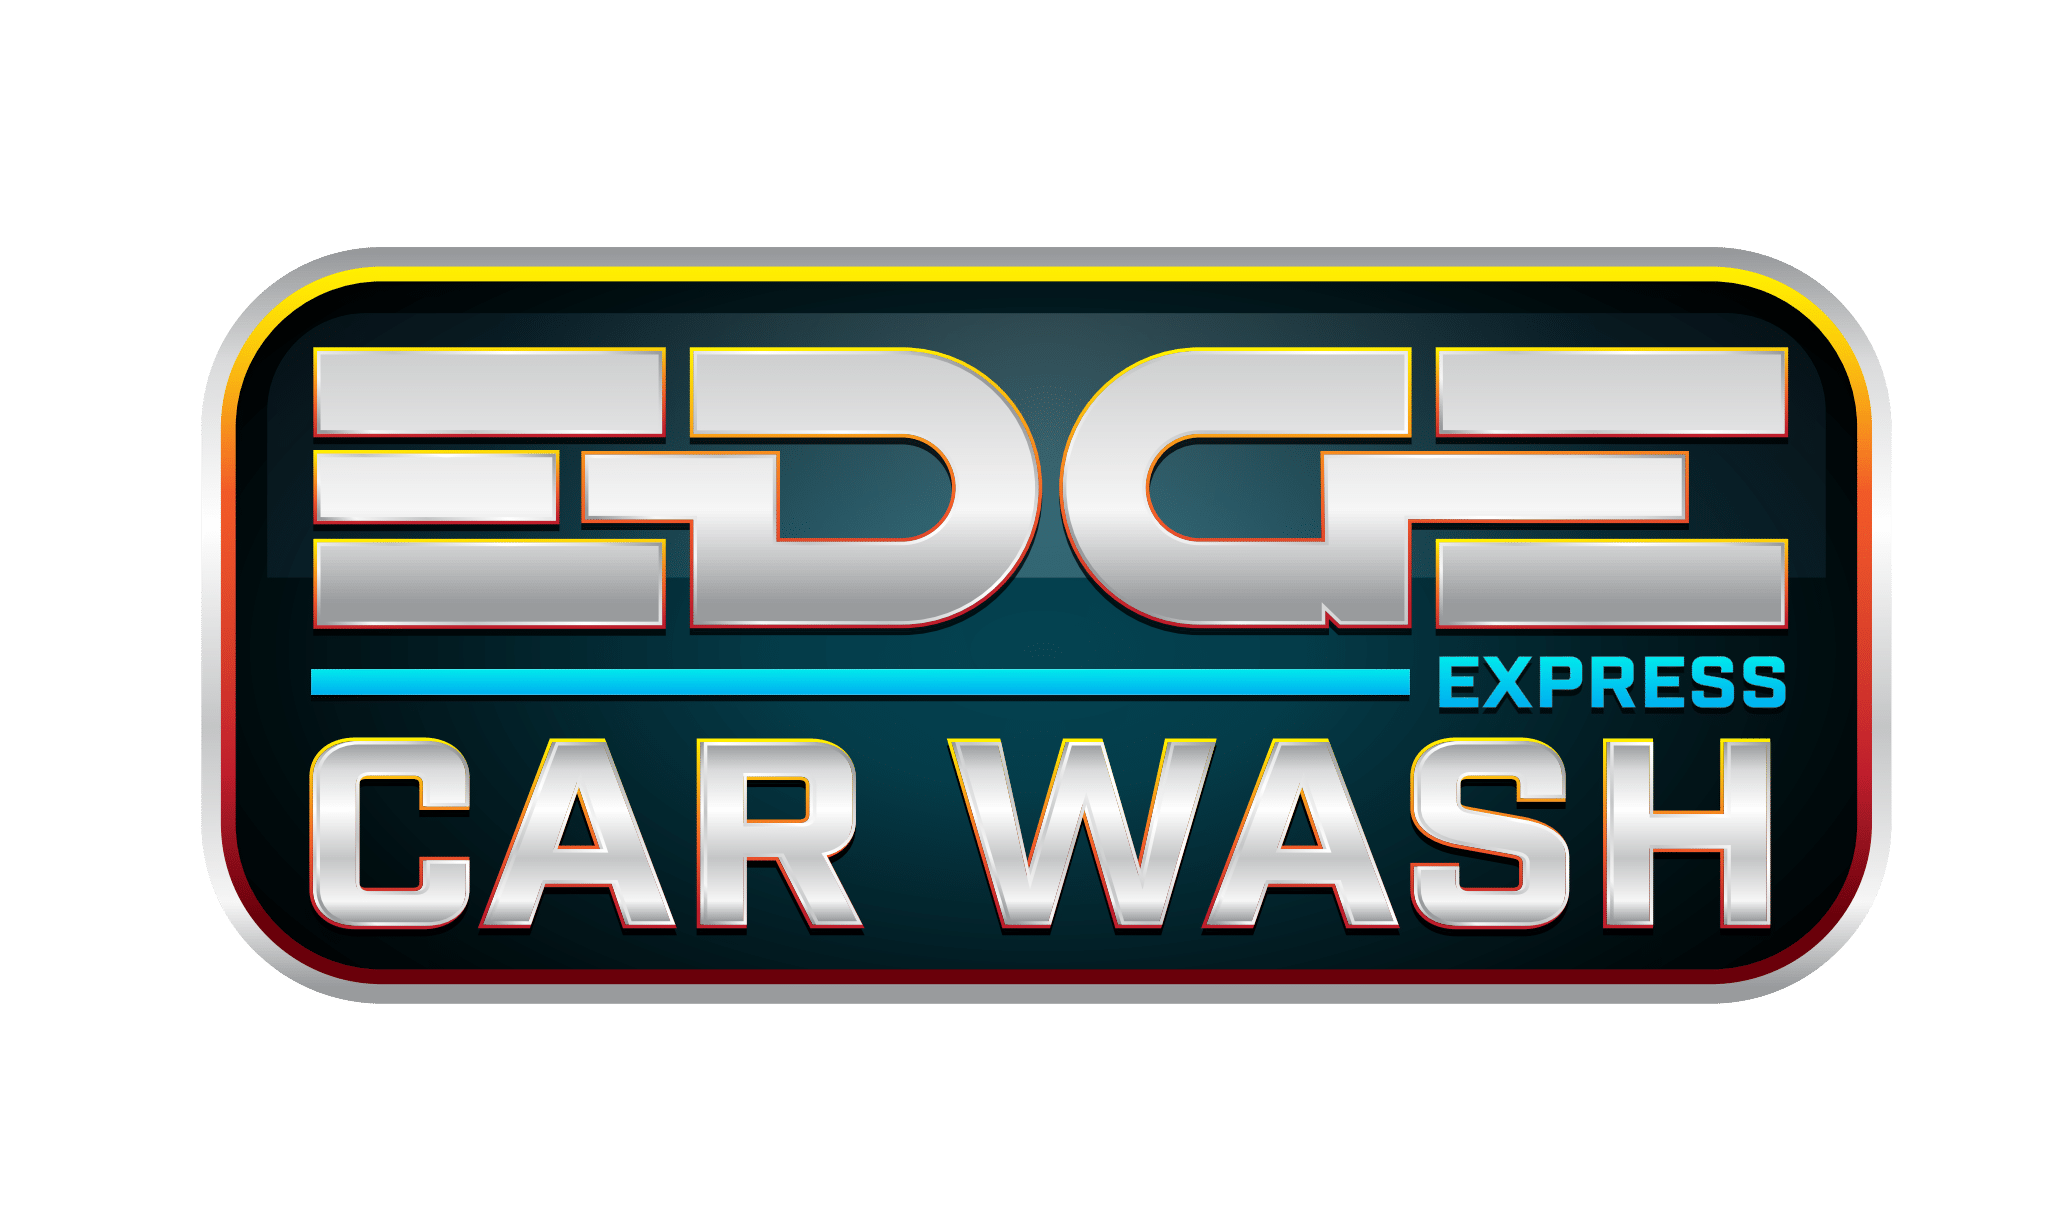 Edge Express Carwash